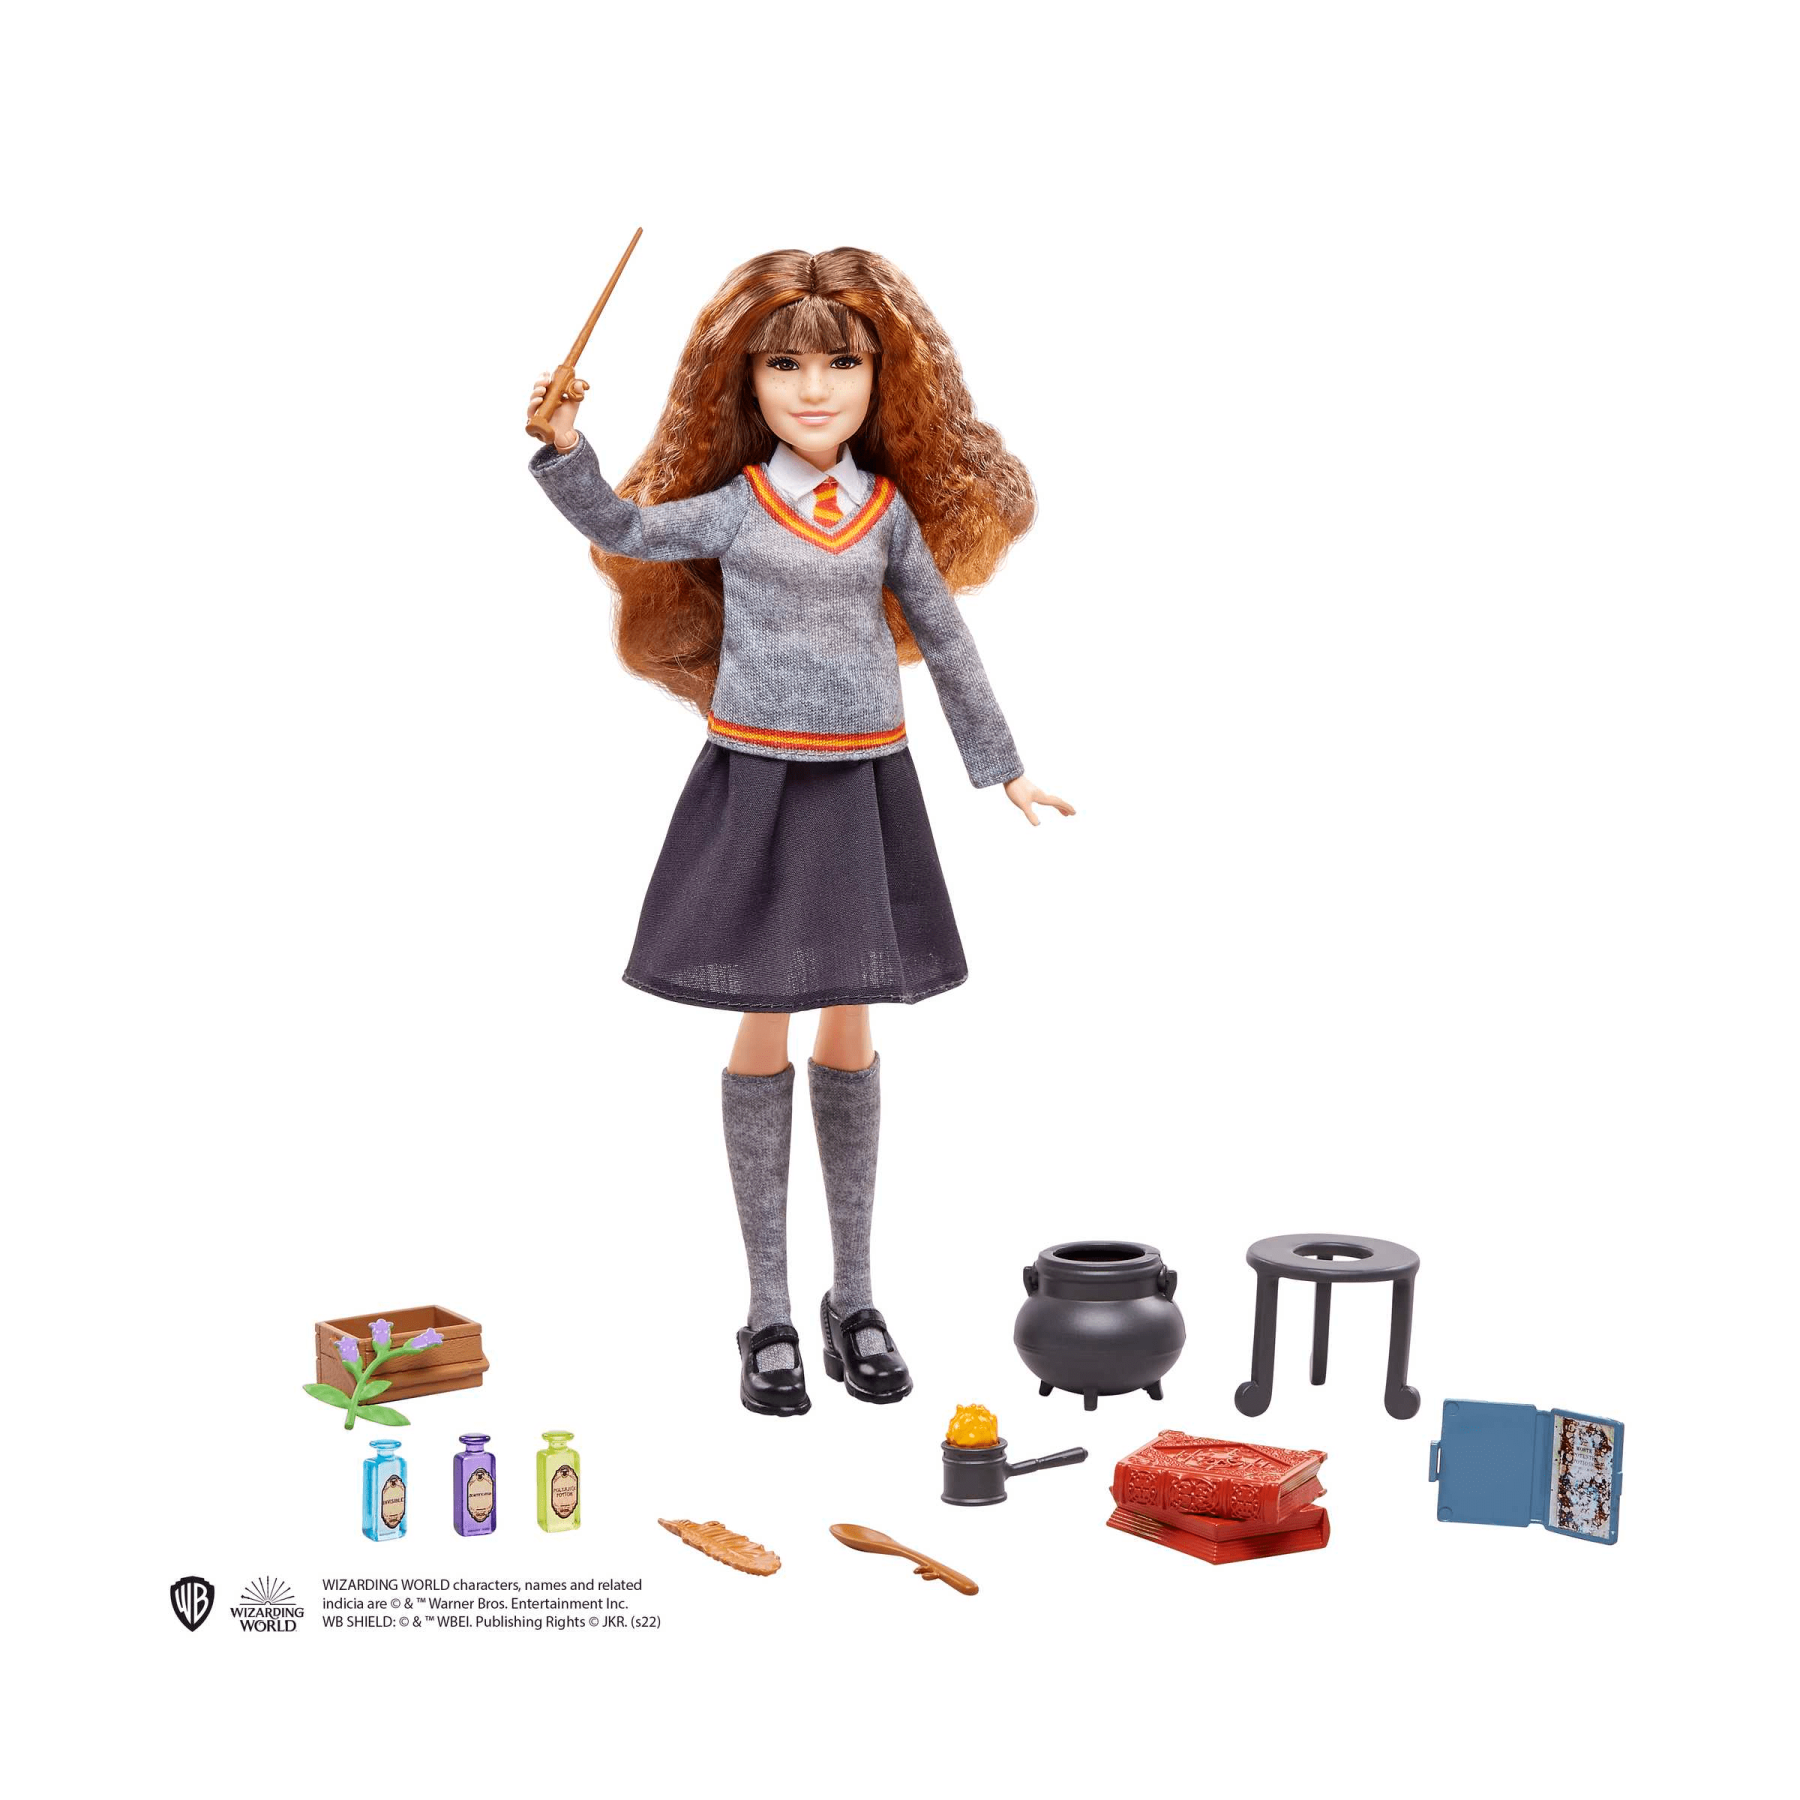 Harry potter hermione e la pozione polisucco, playset con bambola hermione granger in uniforme di hogwarts e accessori, giocattolo per bambini dai 6 anni in su - Harry Potter